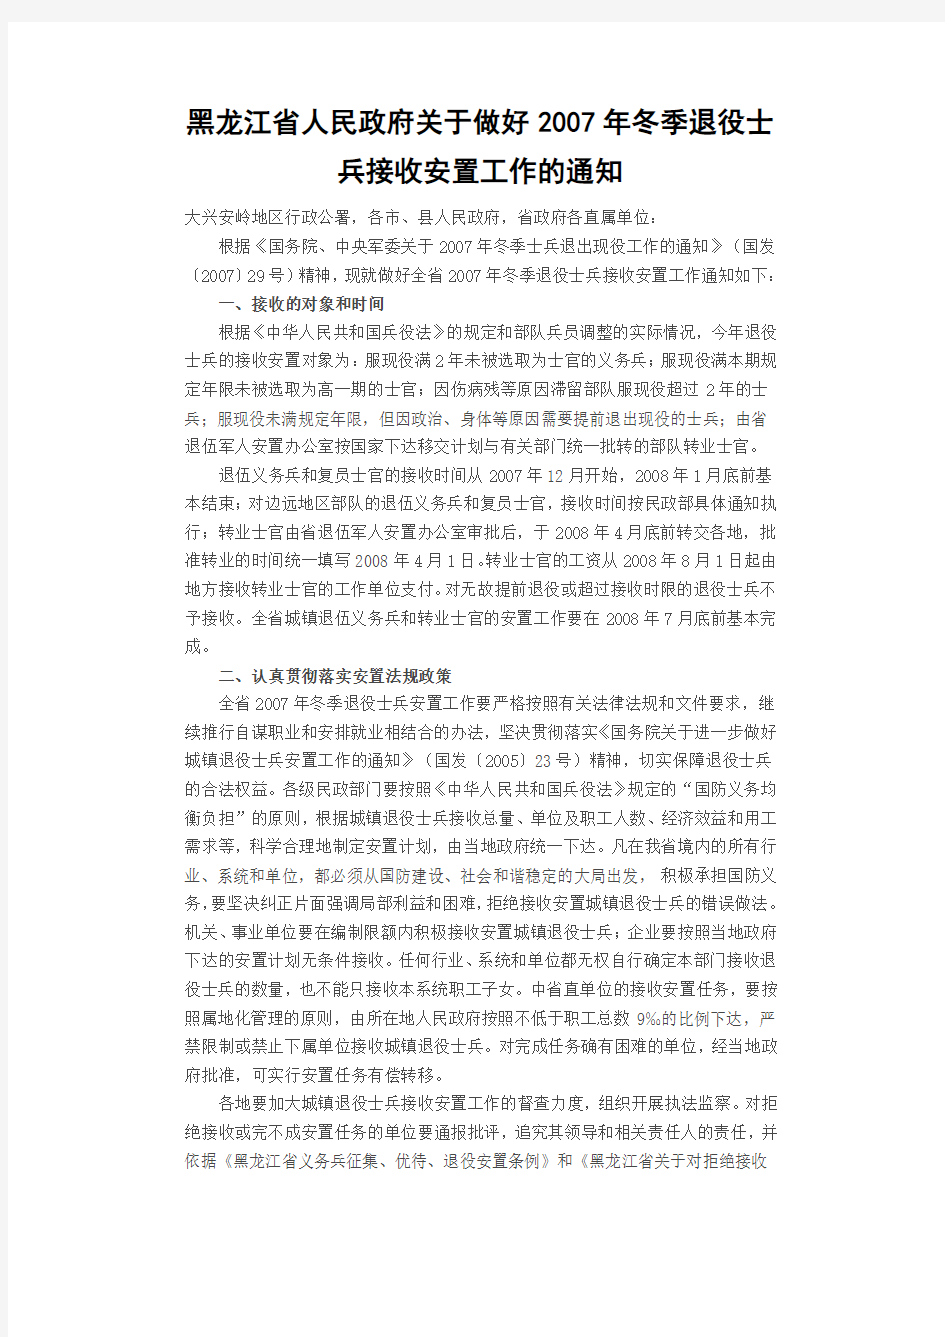 黑龙江省人民政府关于做好2007年冬季退役士兵接收安置工作的通知